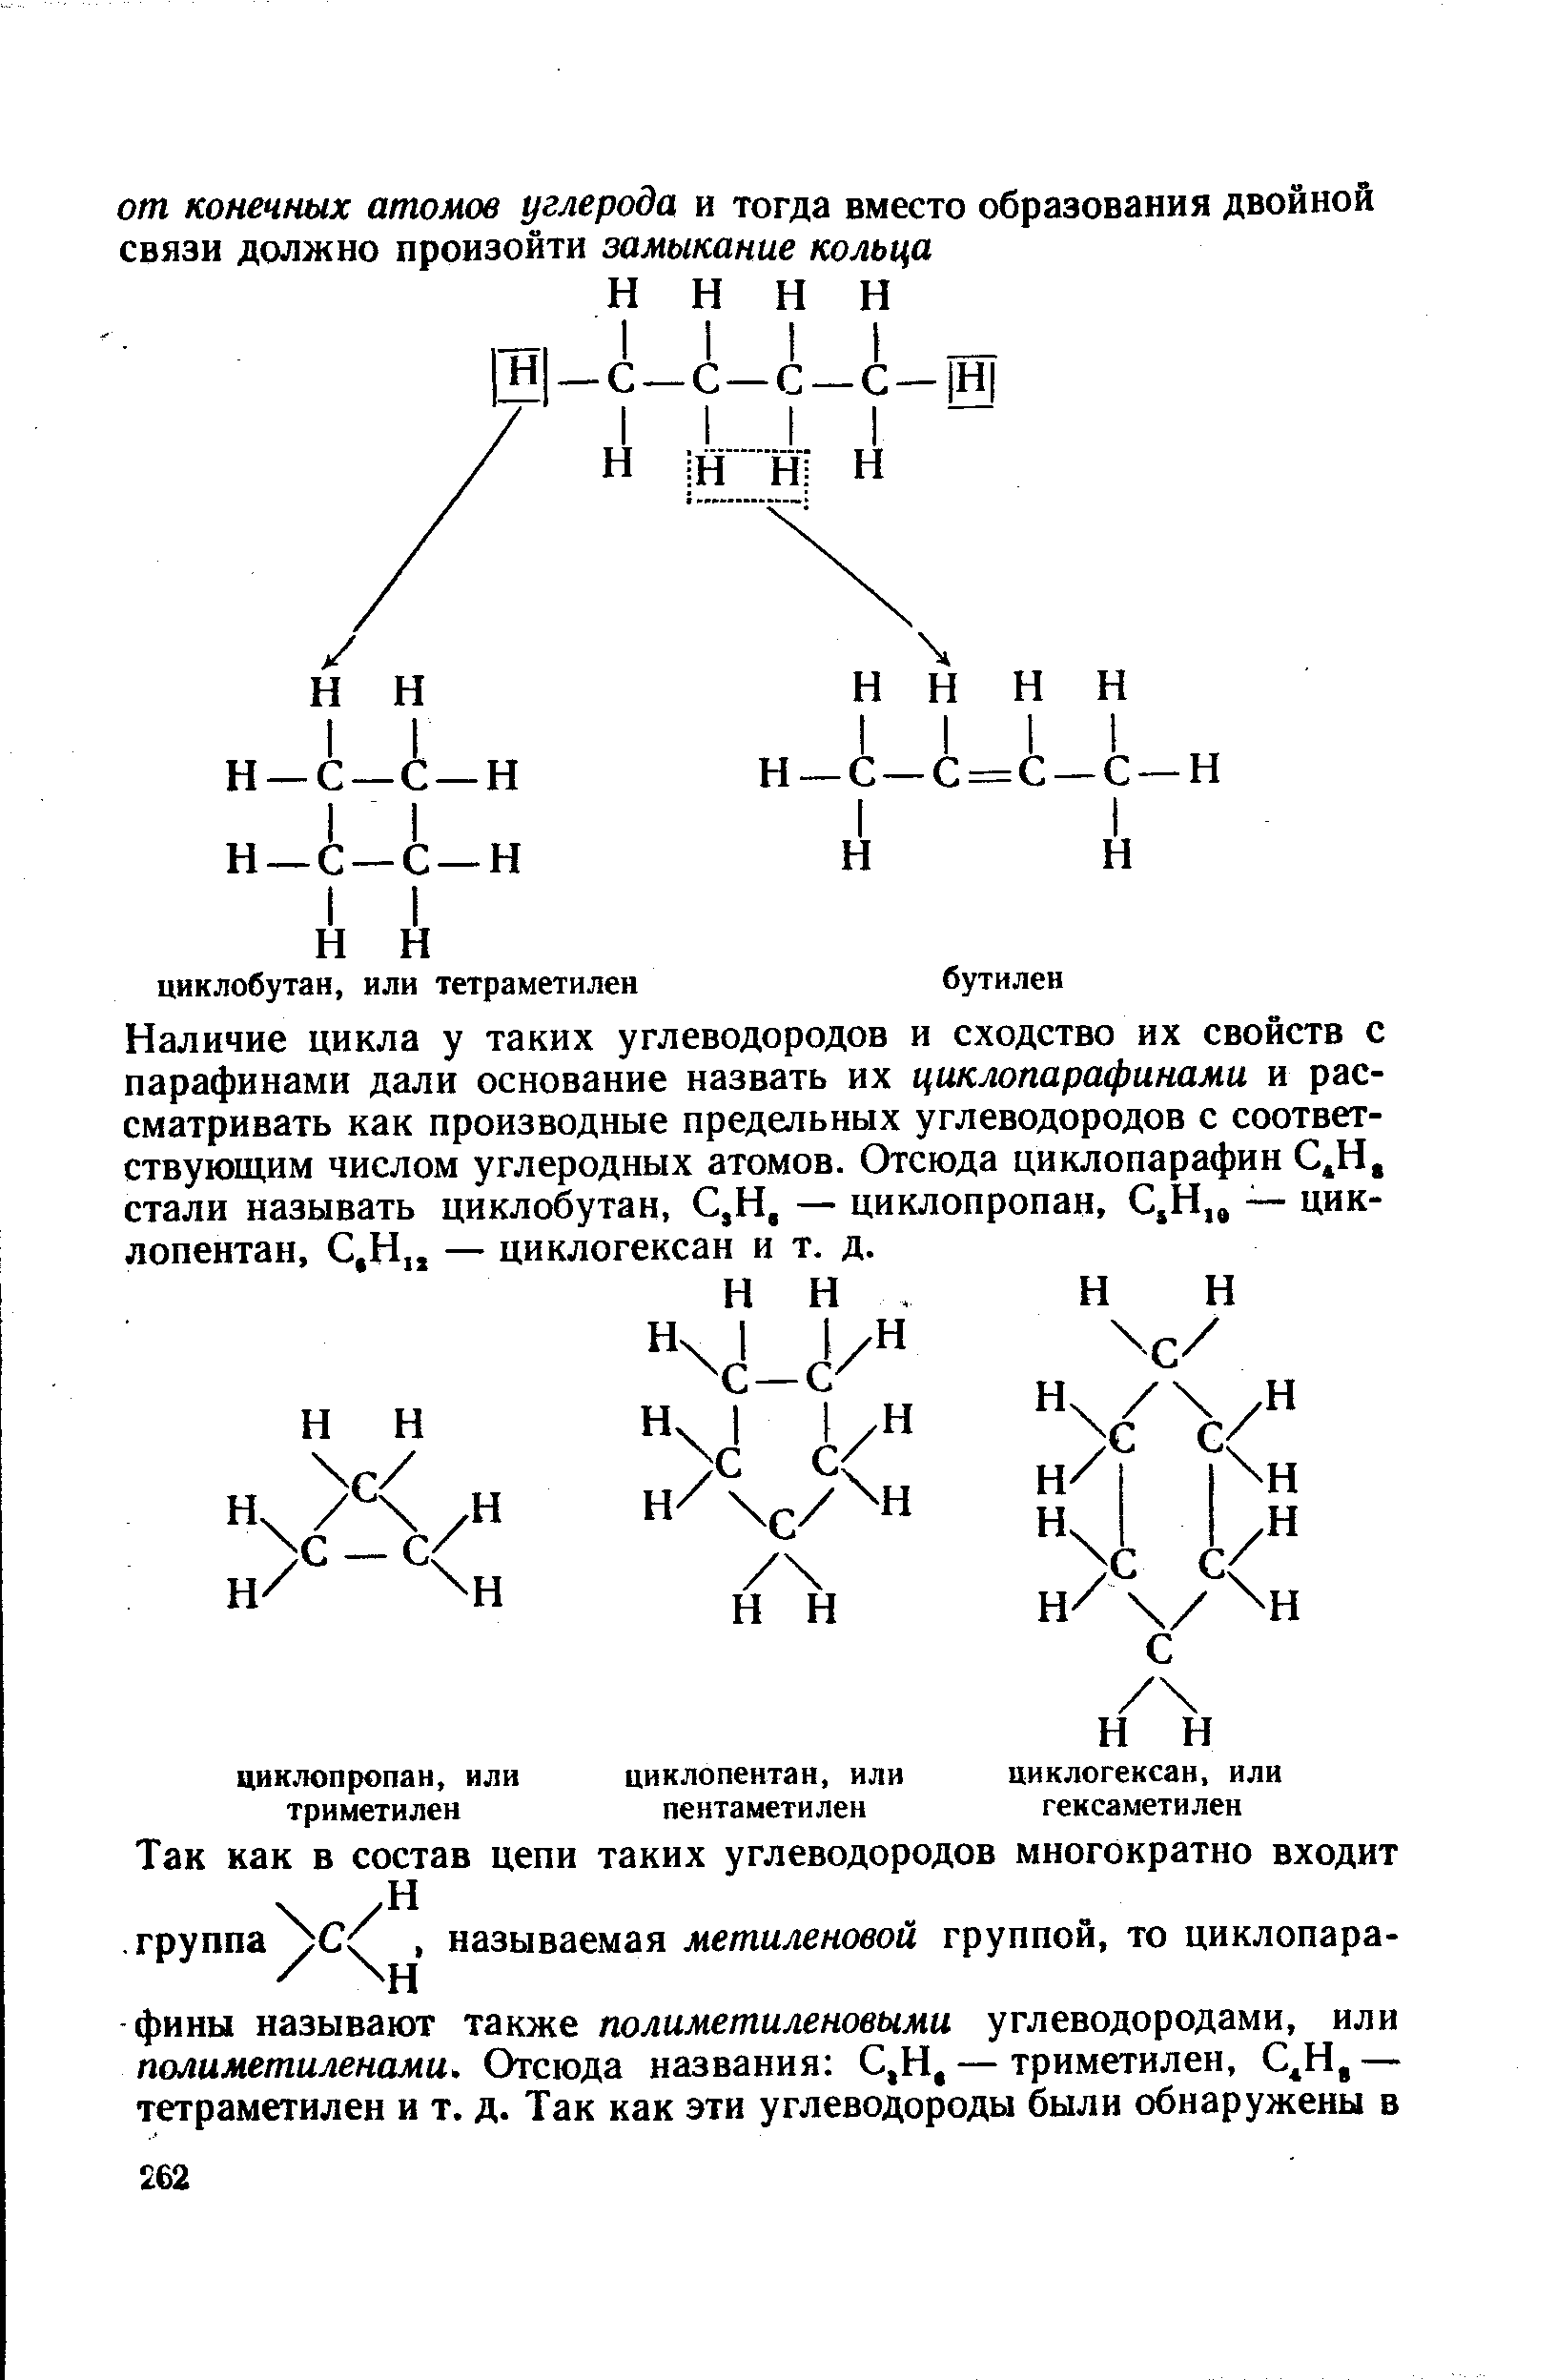 Наличие цикла у таких углеводородов и сходство их свойств с парафинами дали основание назвать их циклопарафинами и рассматривать как производные предельных углеводородов с соответствующим числом углеродных атомов. Отсюда циклопарафин С.Н, стали называть циклобутан, С,Н, — циклопропан, С,Н,, — цик-лопентан, С,Н — циклогексан и т. д.